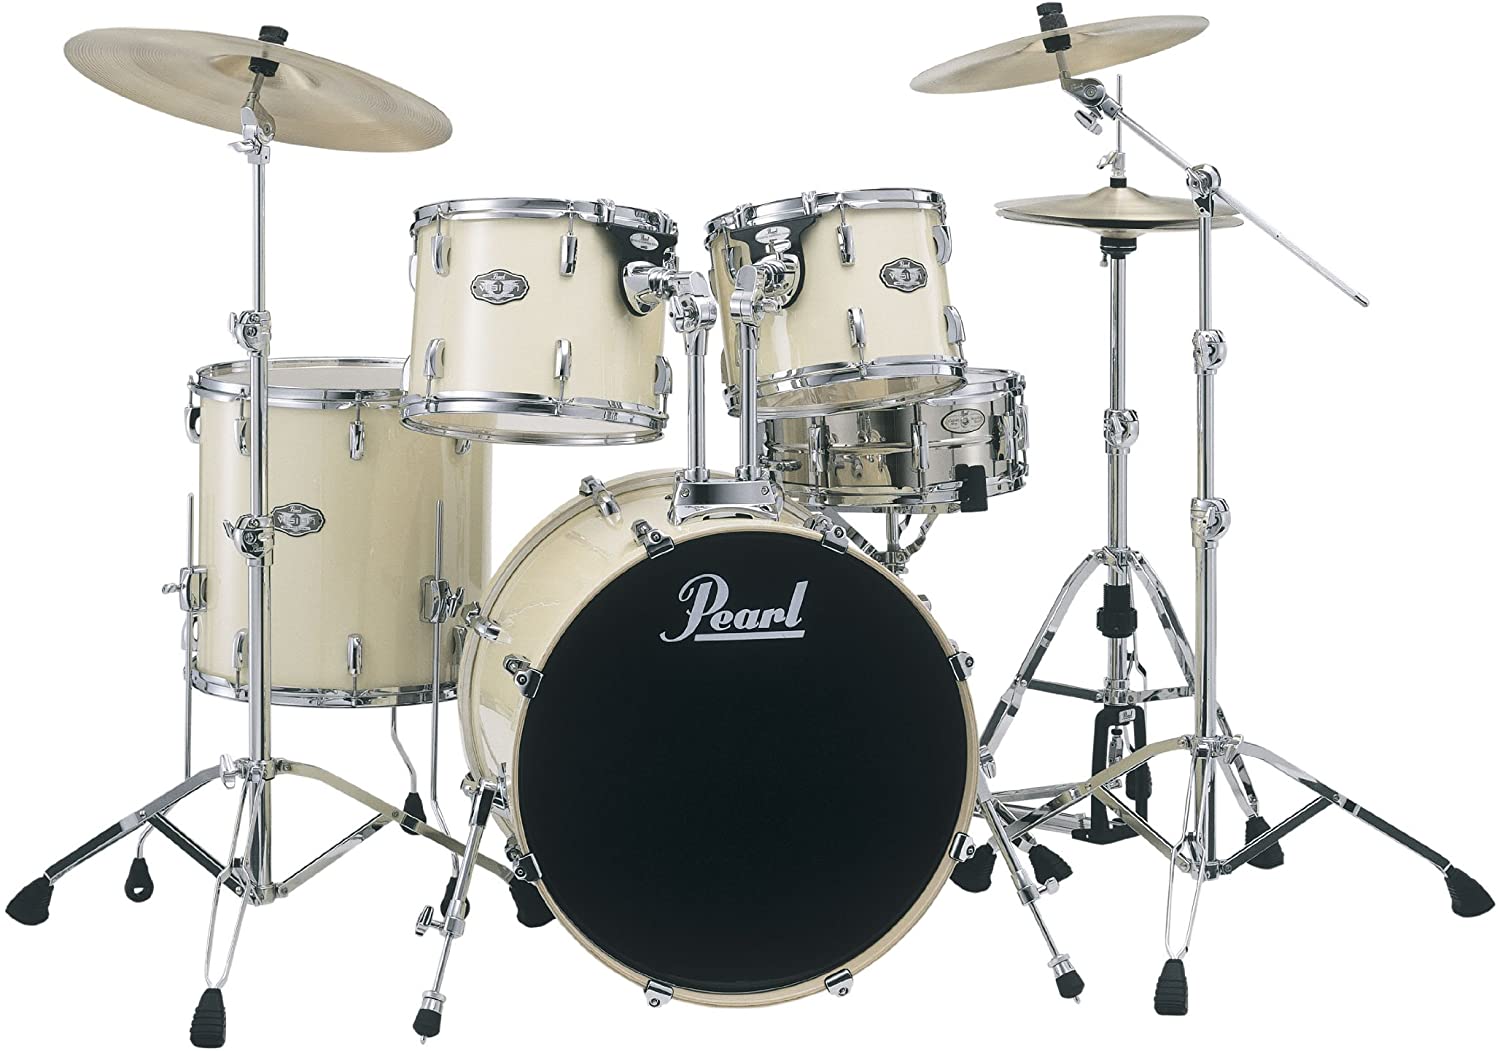 Pearl Vision Drum Set review